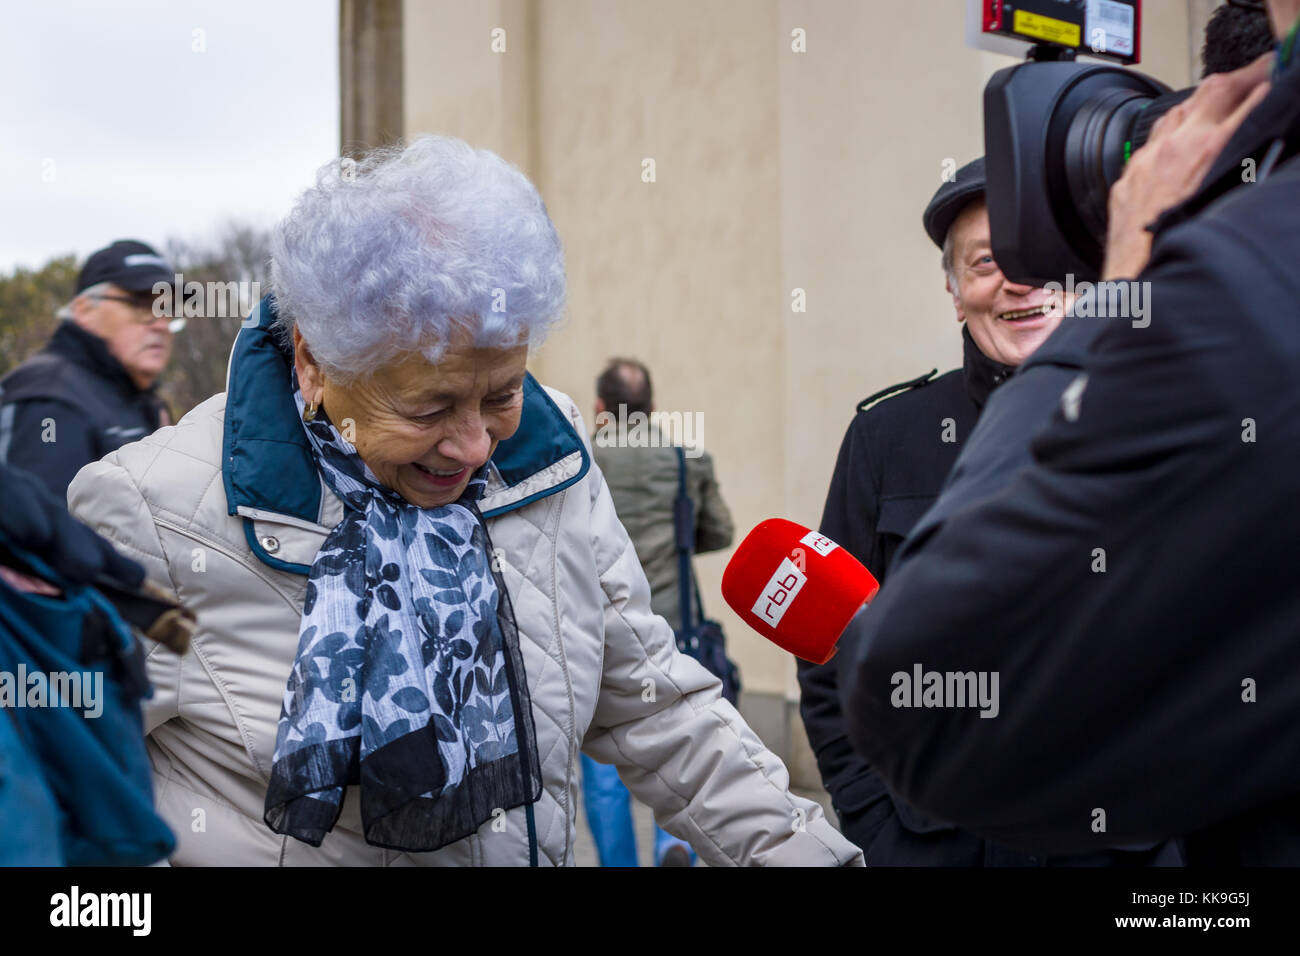 Berlino - Novembre 12, 2017: corrispondente del tedesco della società televisiva RBB (berlino-Brandeburgo broadcasting) interviste una donna anziana. Foto Stock